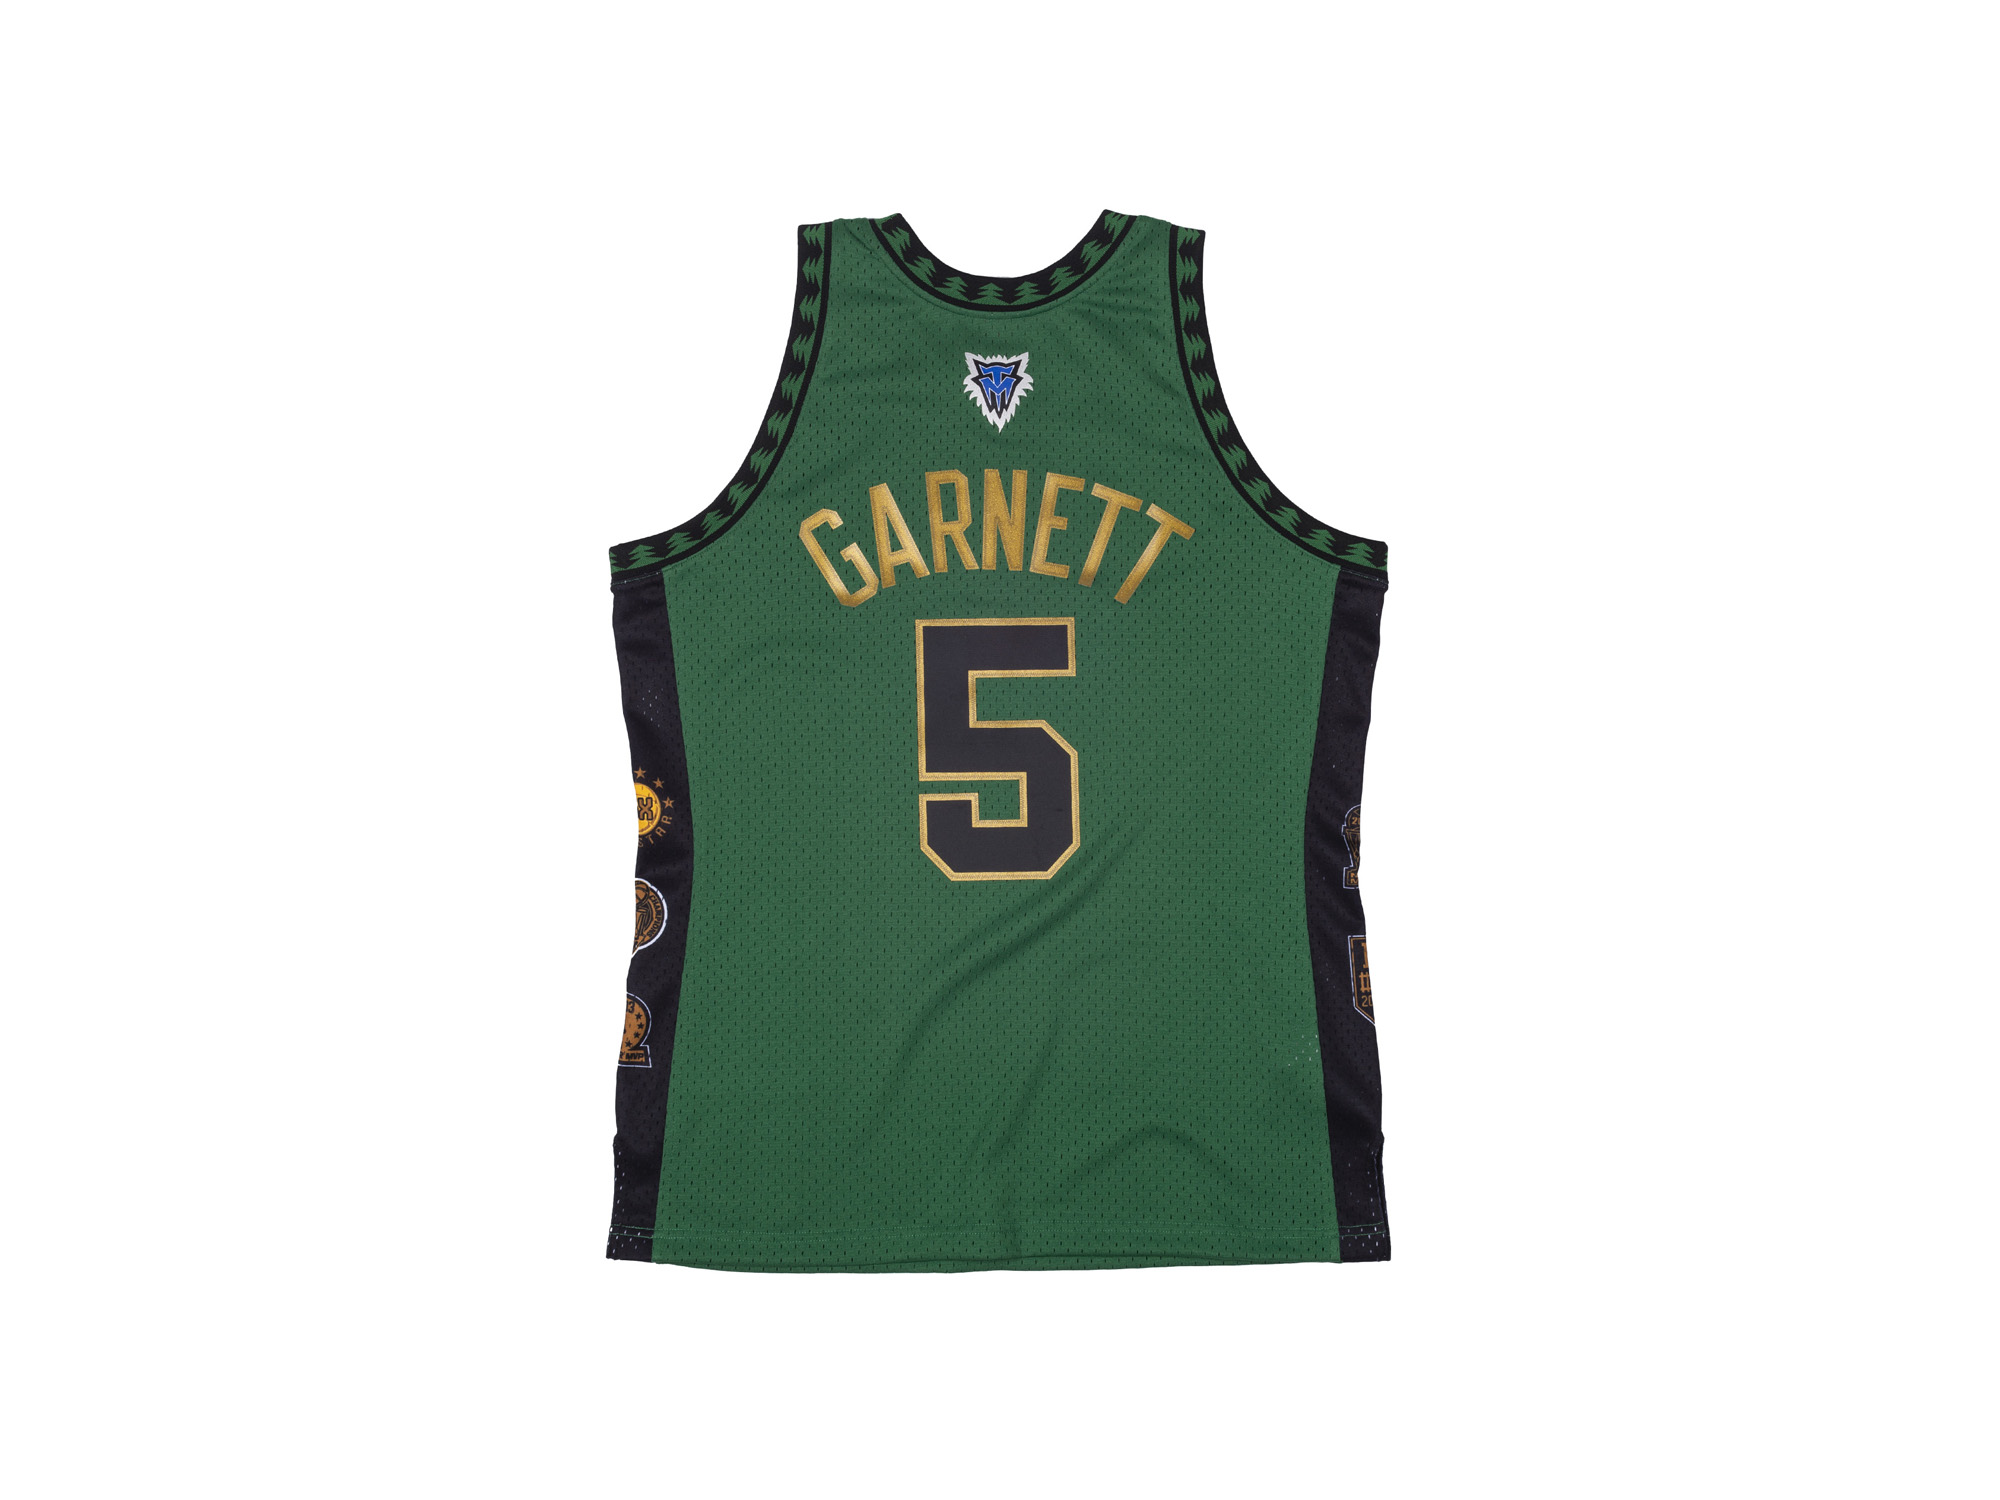 M&N Kevin Garnett NBA Celtics HOF Swingman Jersey